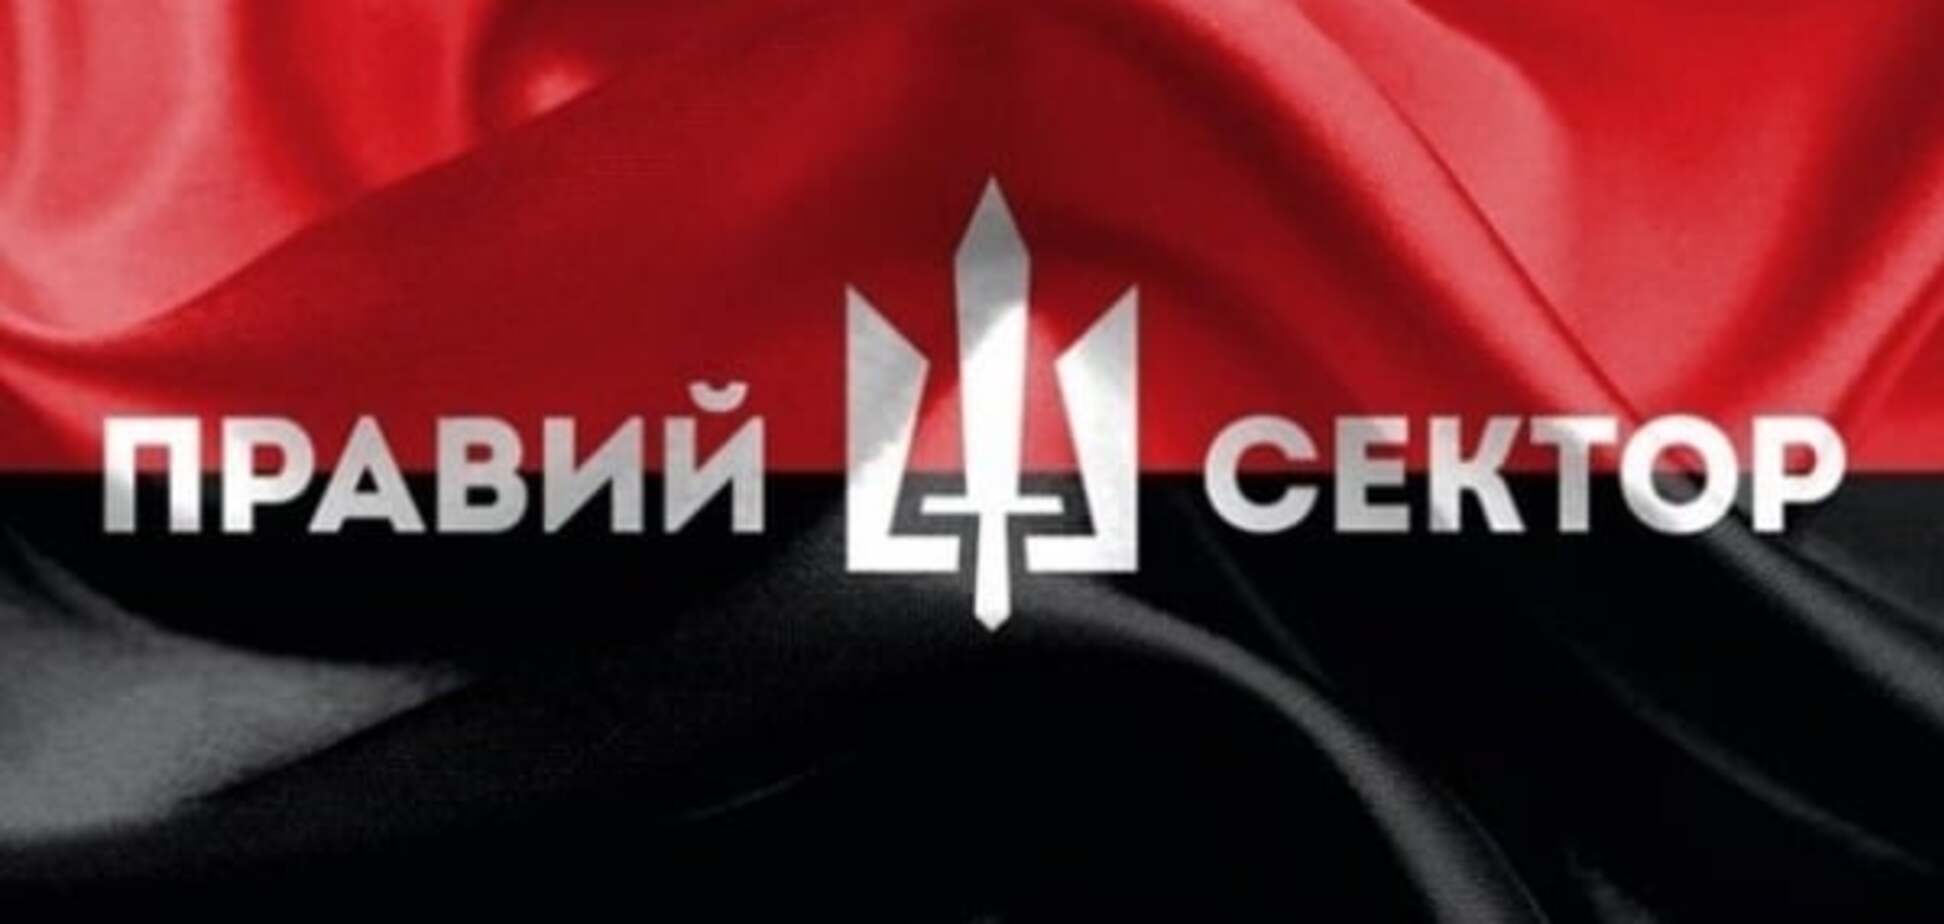 Враги народа: в России издание наказали за 'Правый сектор'